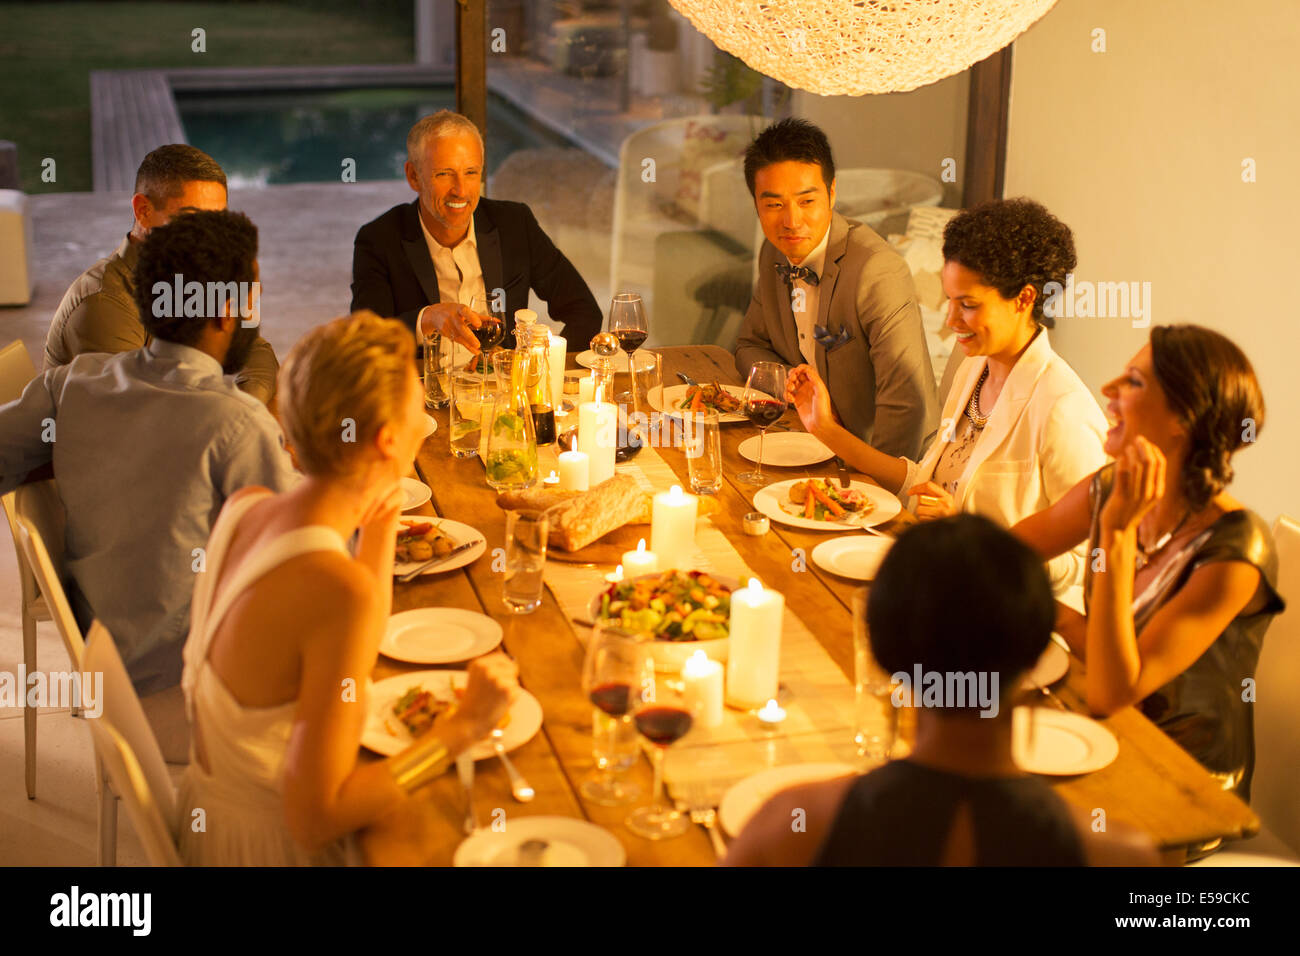 Gli amici di mangiare insieme a cena Foto Stock